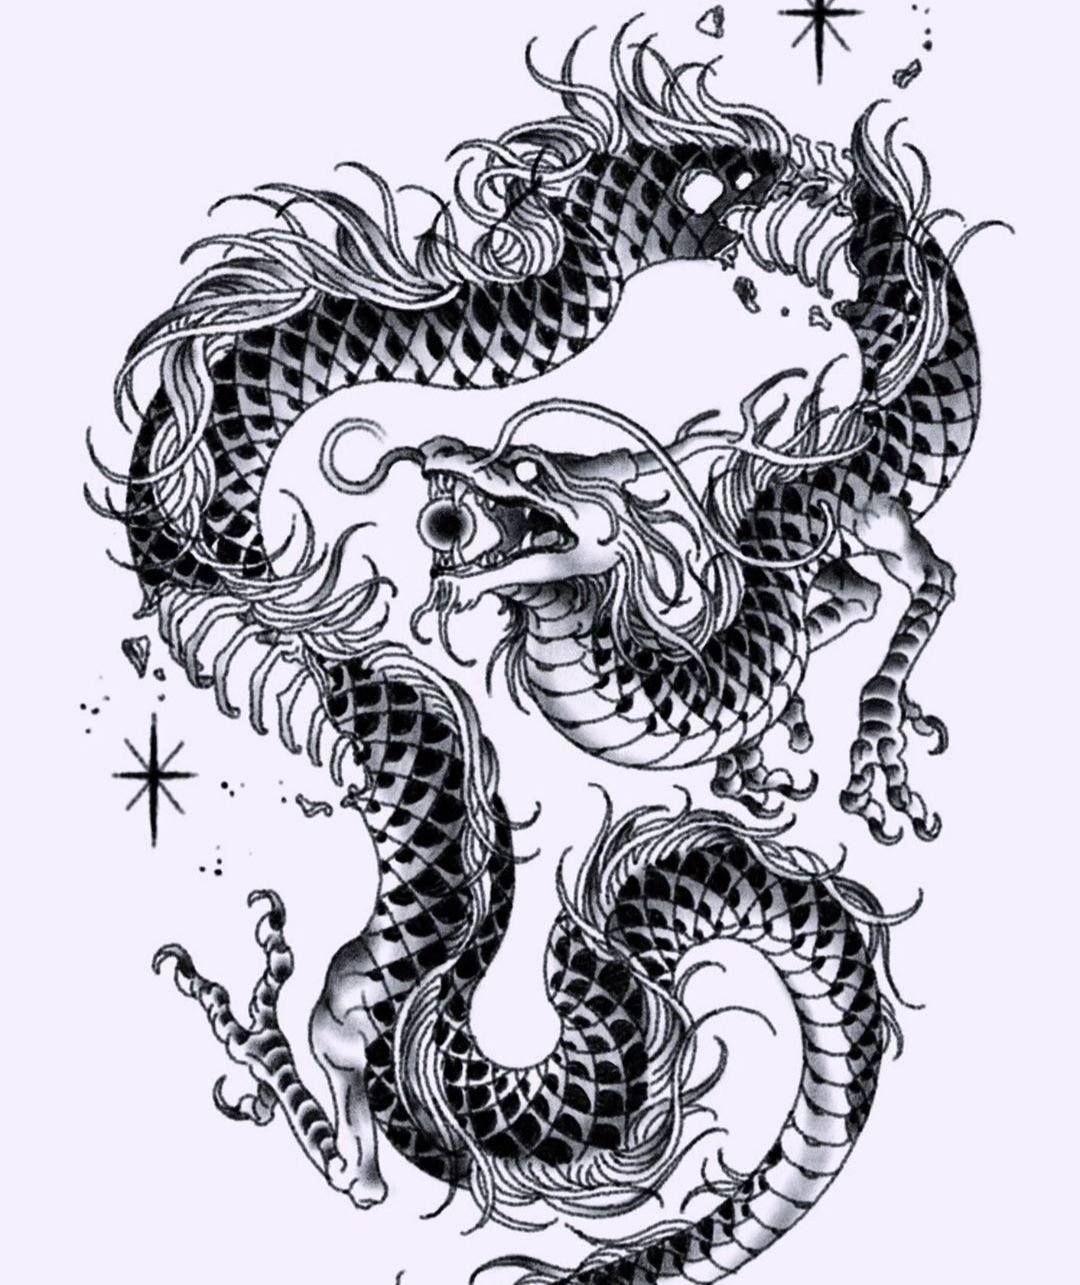 Dragon graphics. Fuku Riu дракон. Тяньлун дракон тату. Дракон тату эскиз. Китайский дракон тату эскизы.